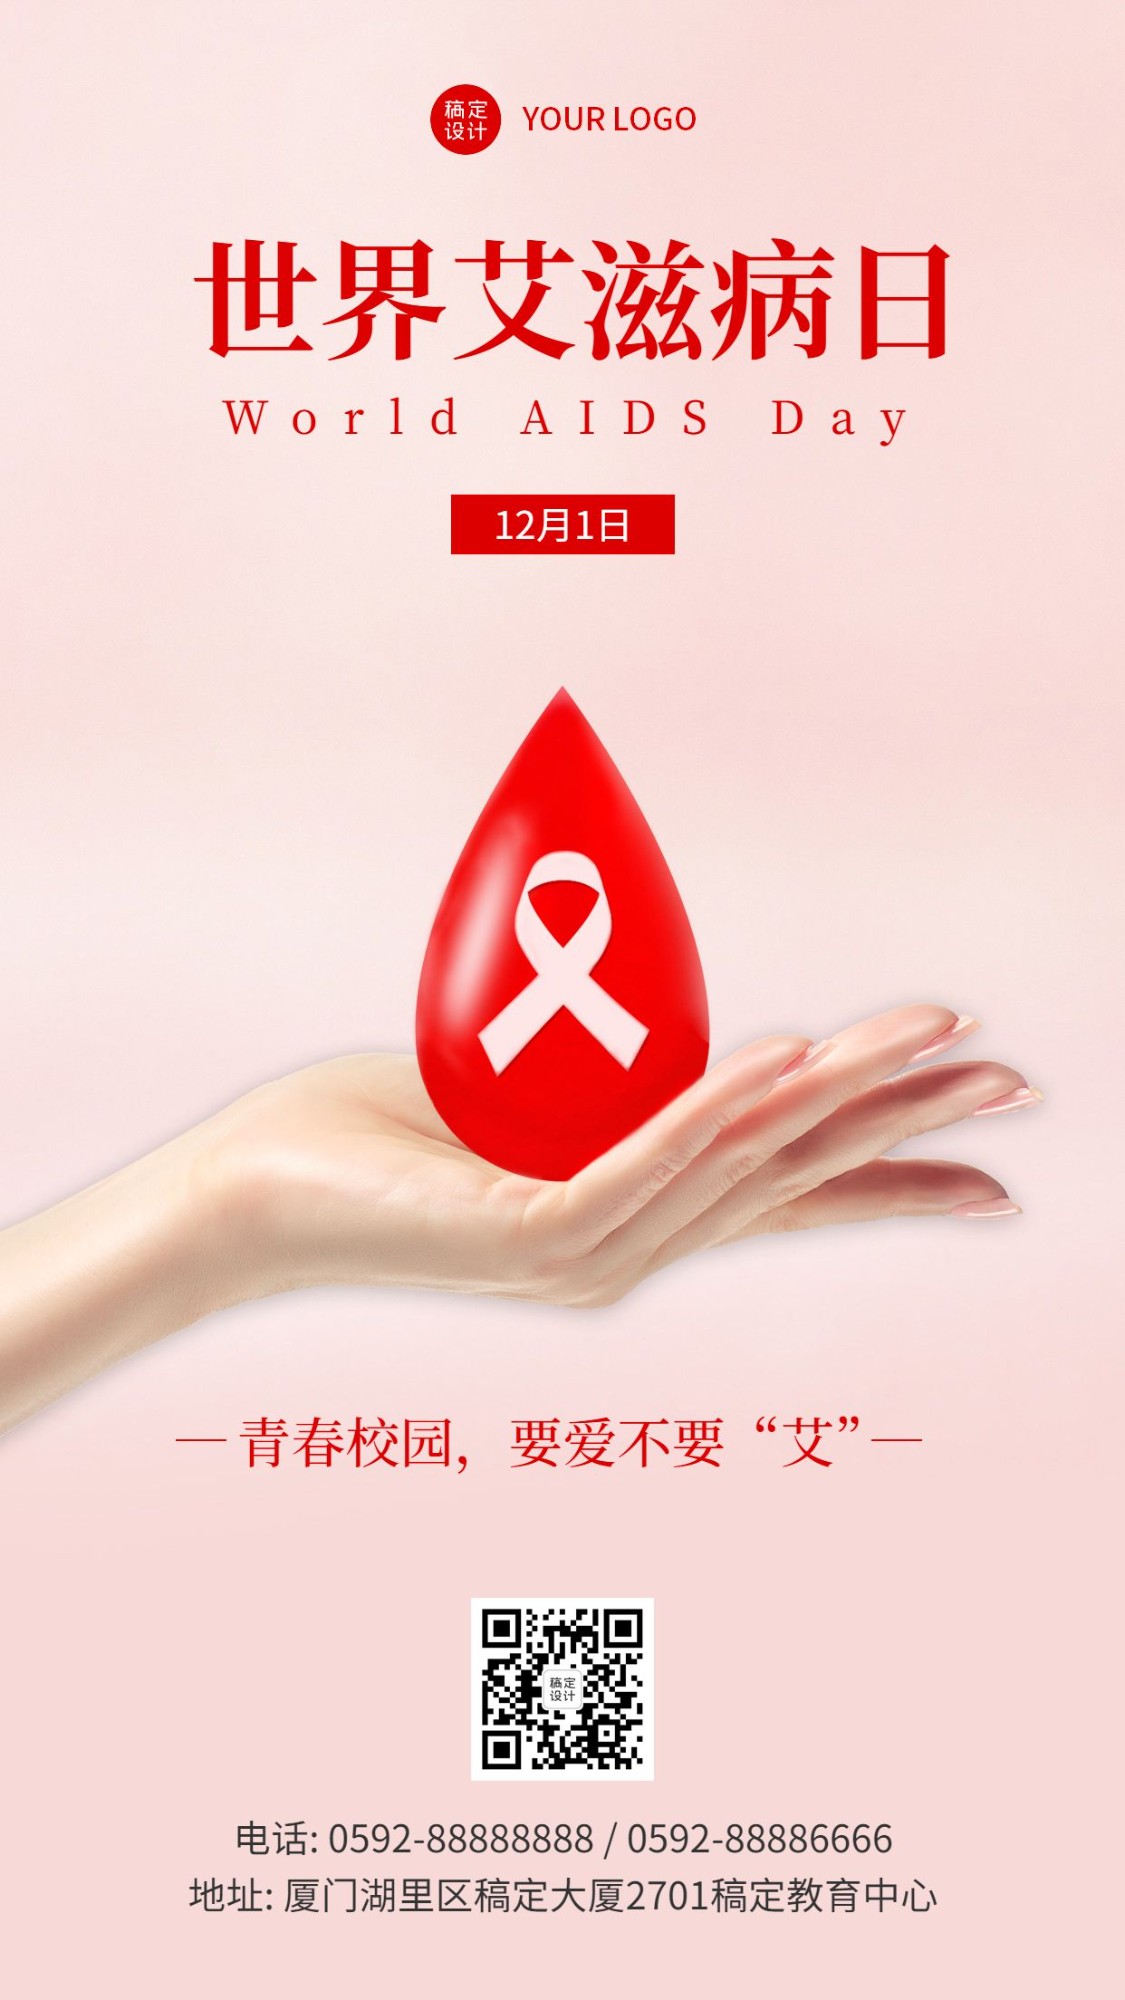 世界艾滋病日校园活动宣传海报预览效果